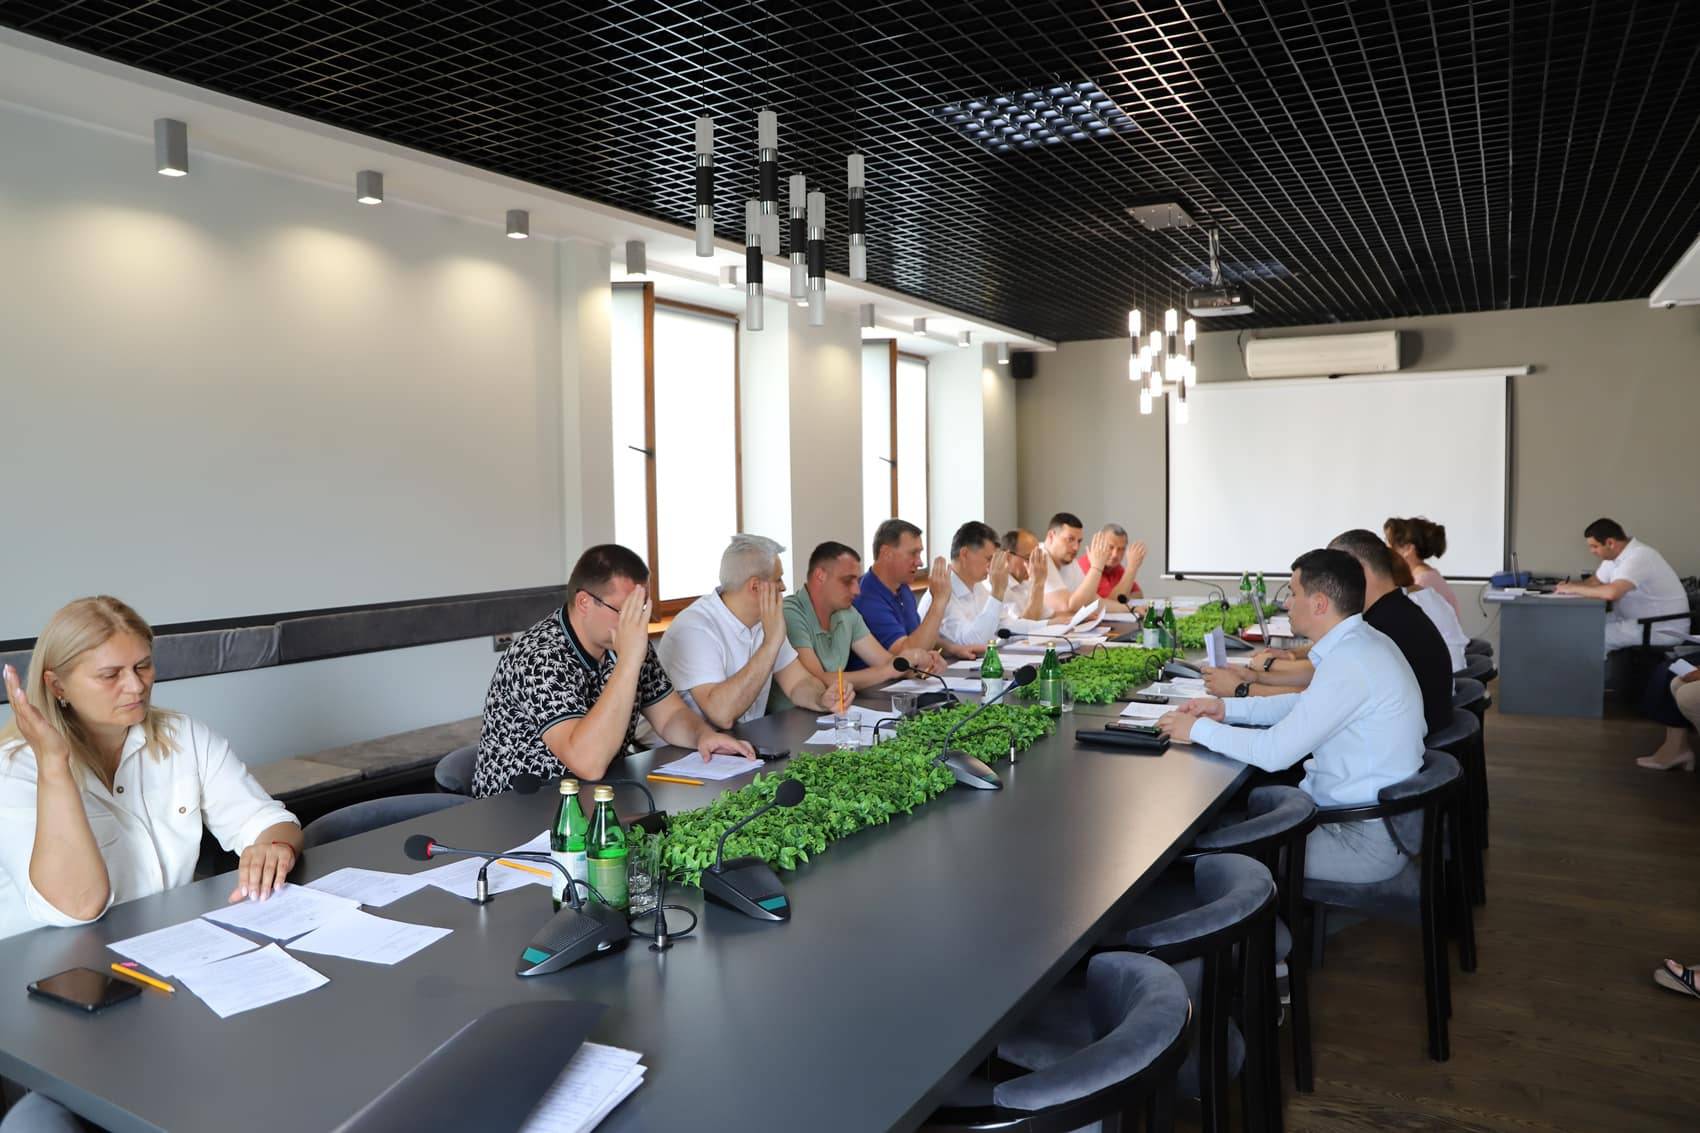 Відбулося чергове засідання виконкому Ужгородської міської ради